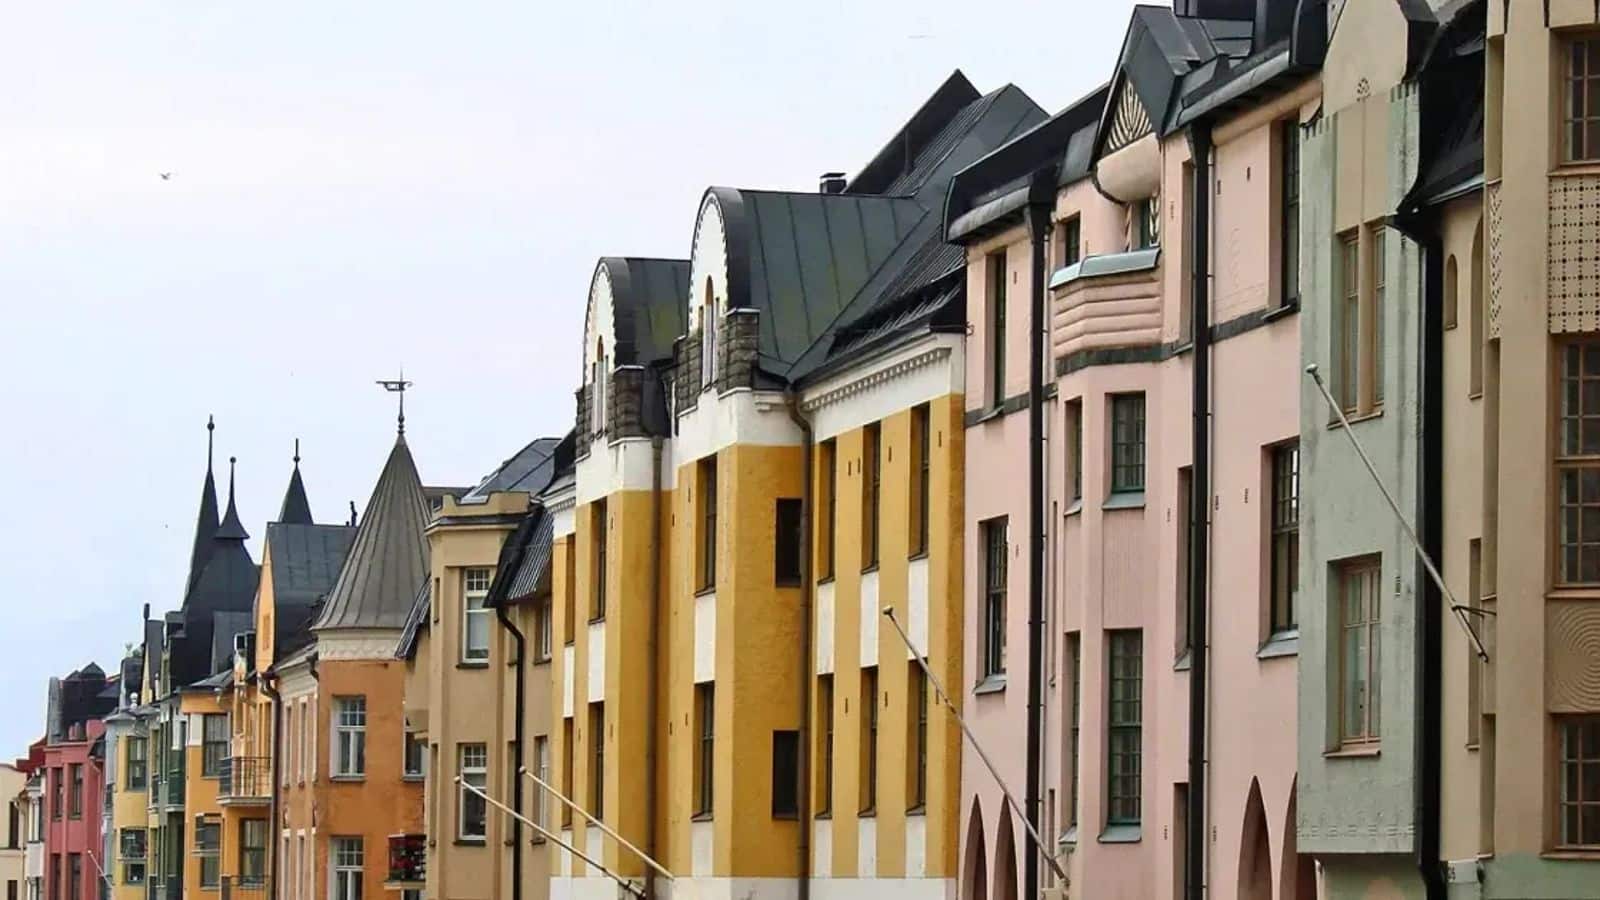 Helsinki's Art Nouveau secrets unveiled